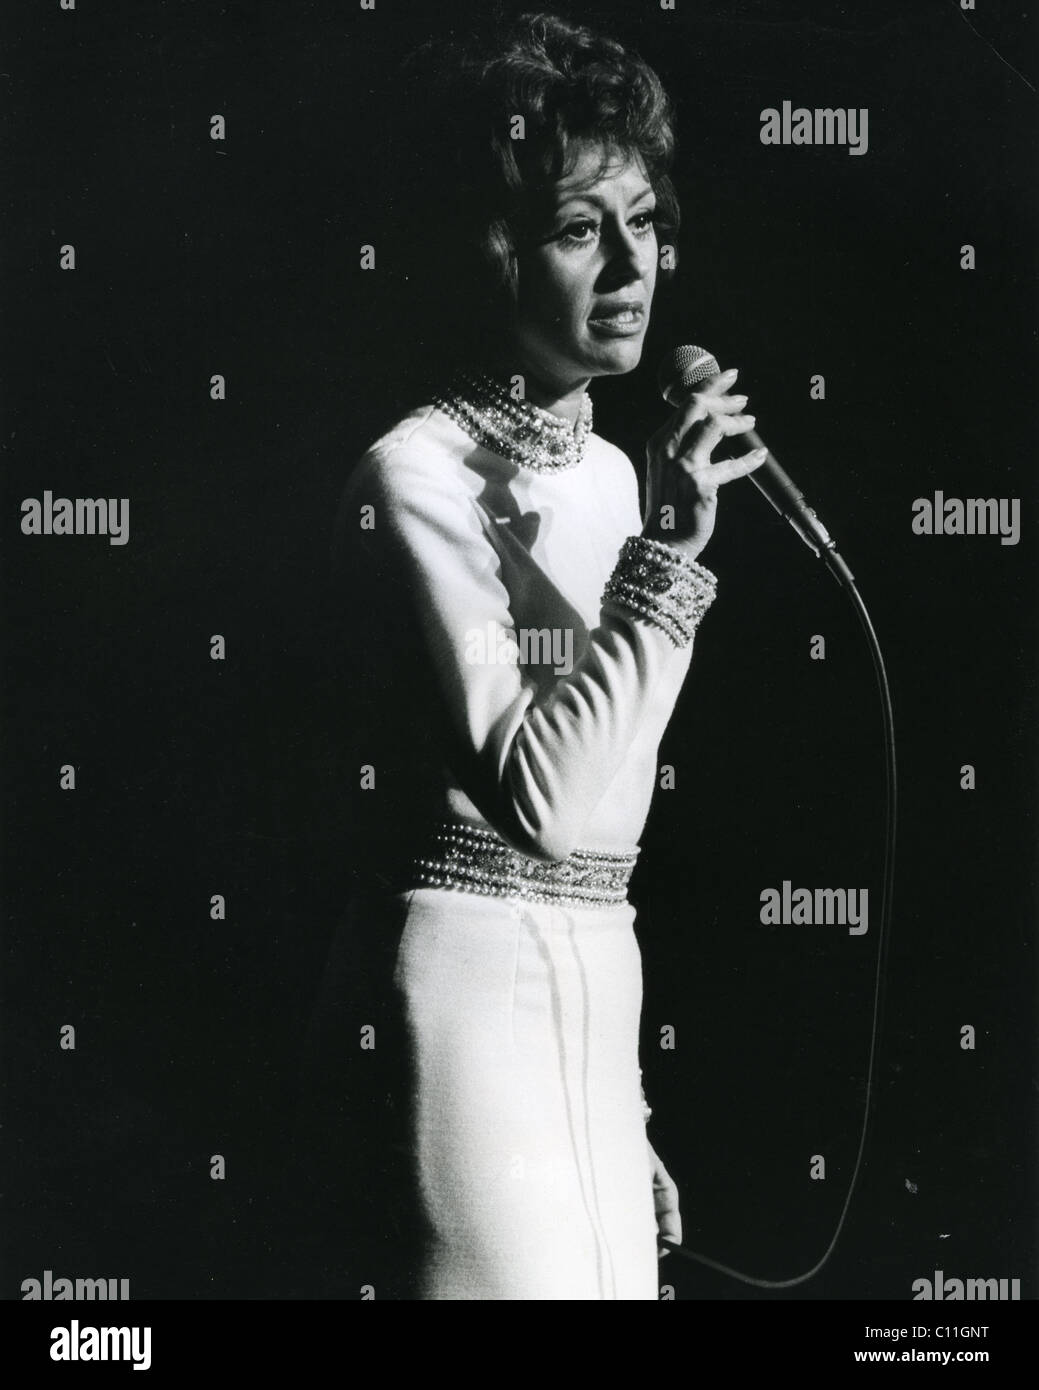 CATARINA VALENTE French-Italian singer in 1970. Photo Tony Gale Stock Photo